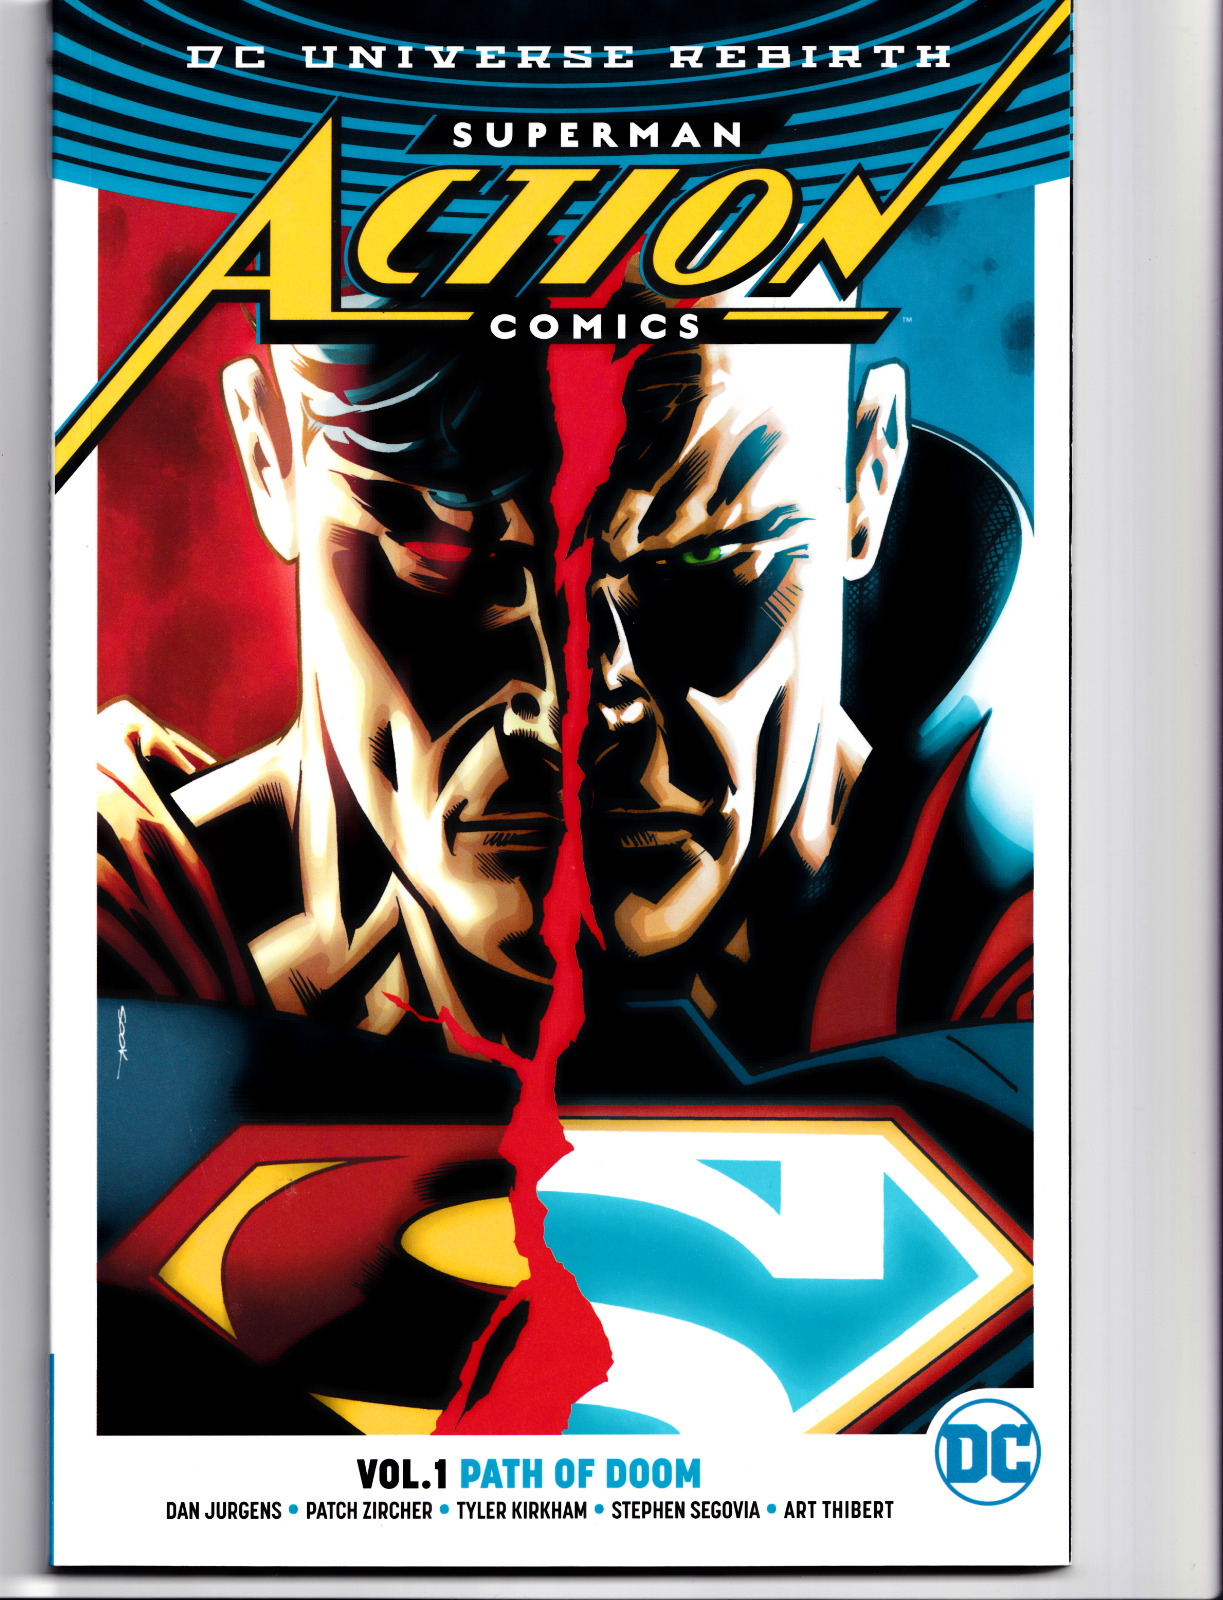 Superman Action Comics Vol 1 Path of Doom New DC Comics TPB Paperback